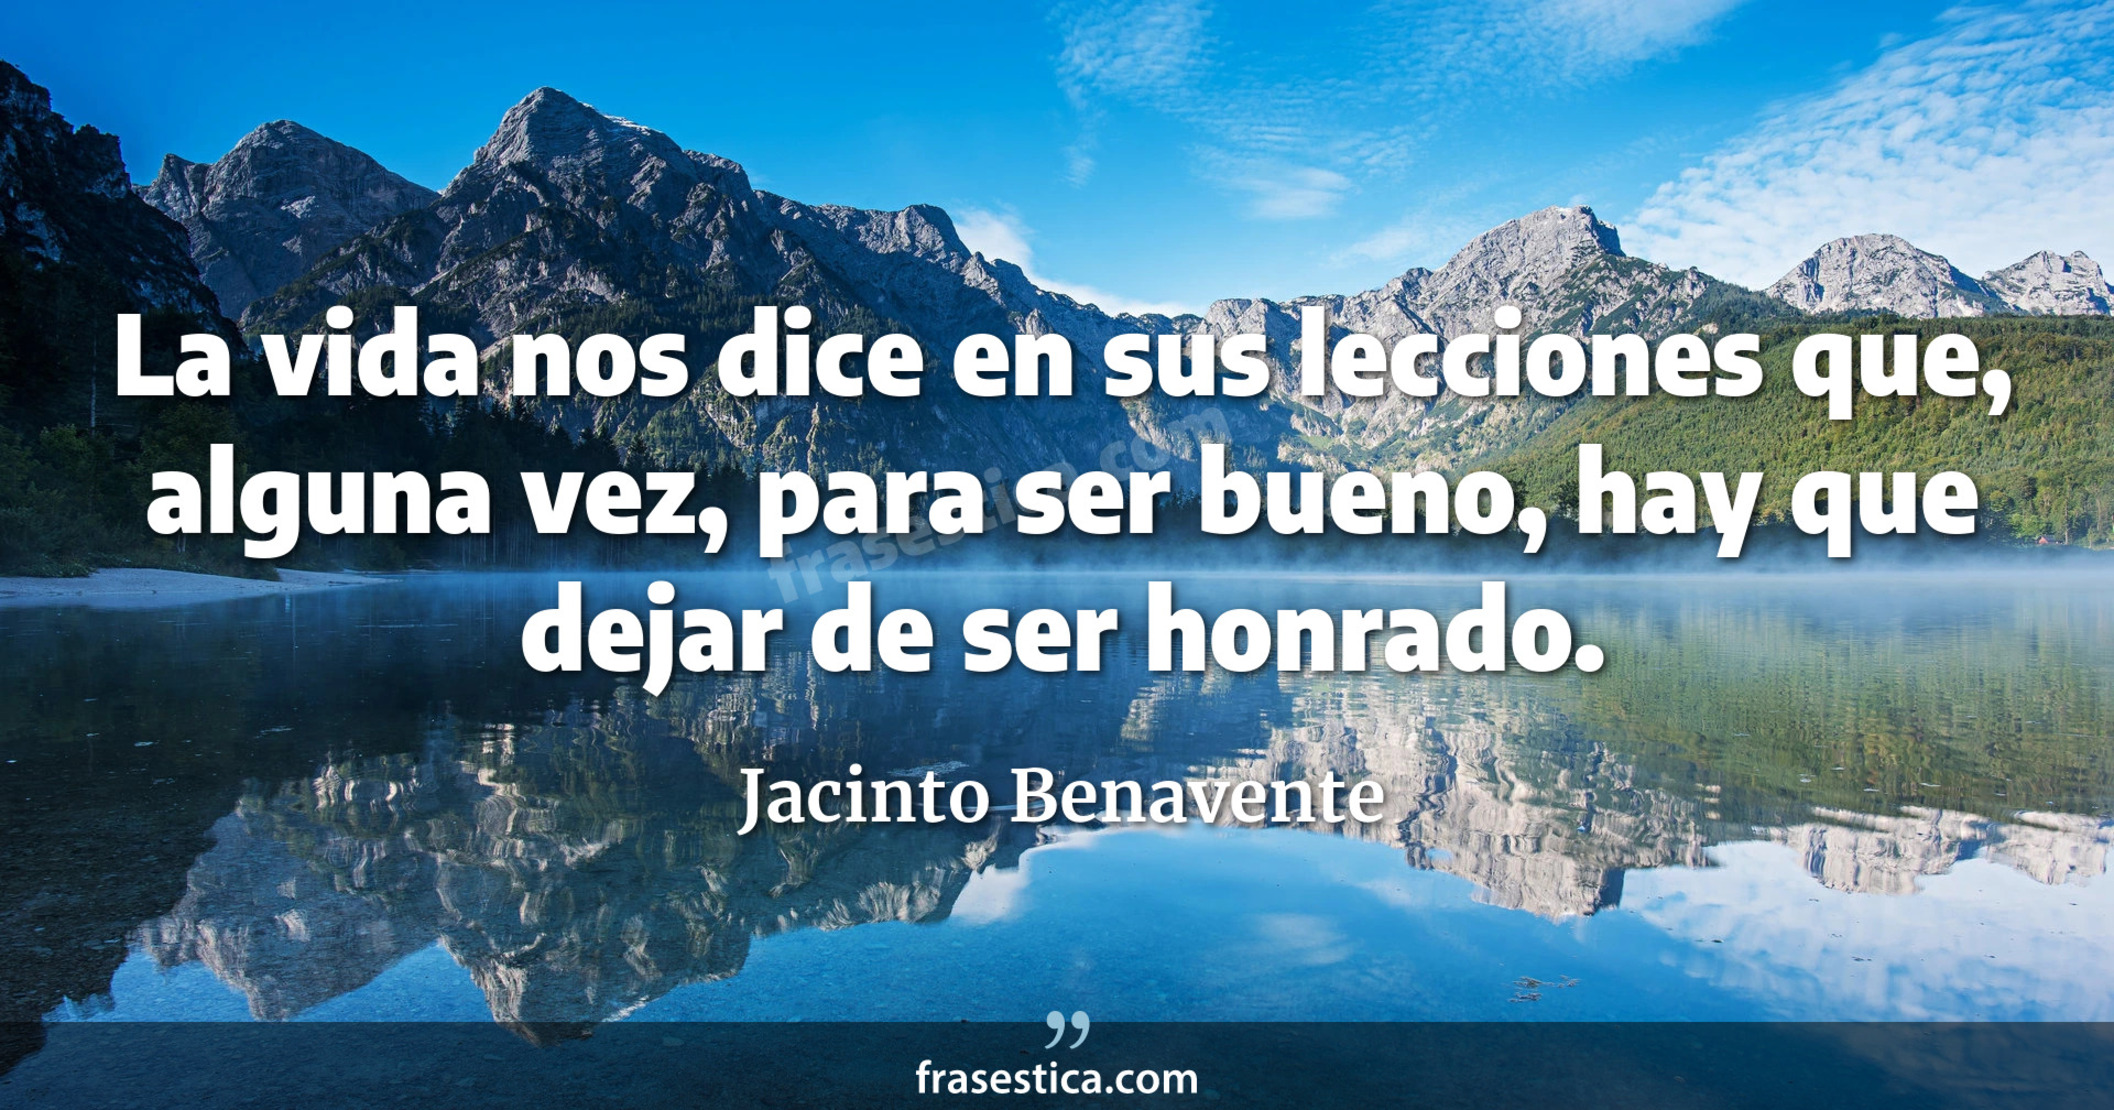 La vida nos dice en sus lecciones que, alguna vez, para ser bueno, hay que dejar de ser honrado. - Jacinto Benavente